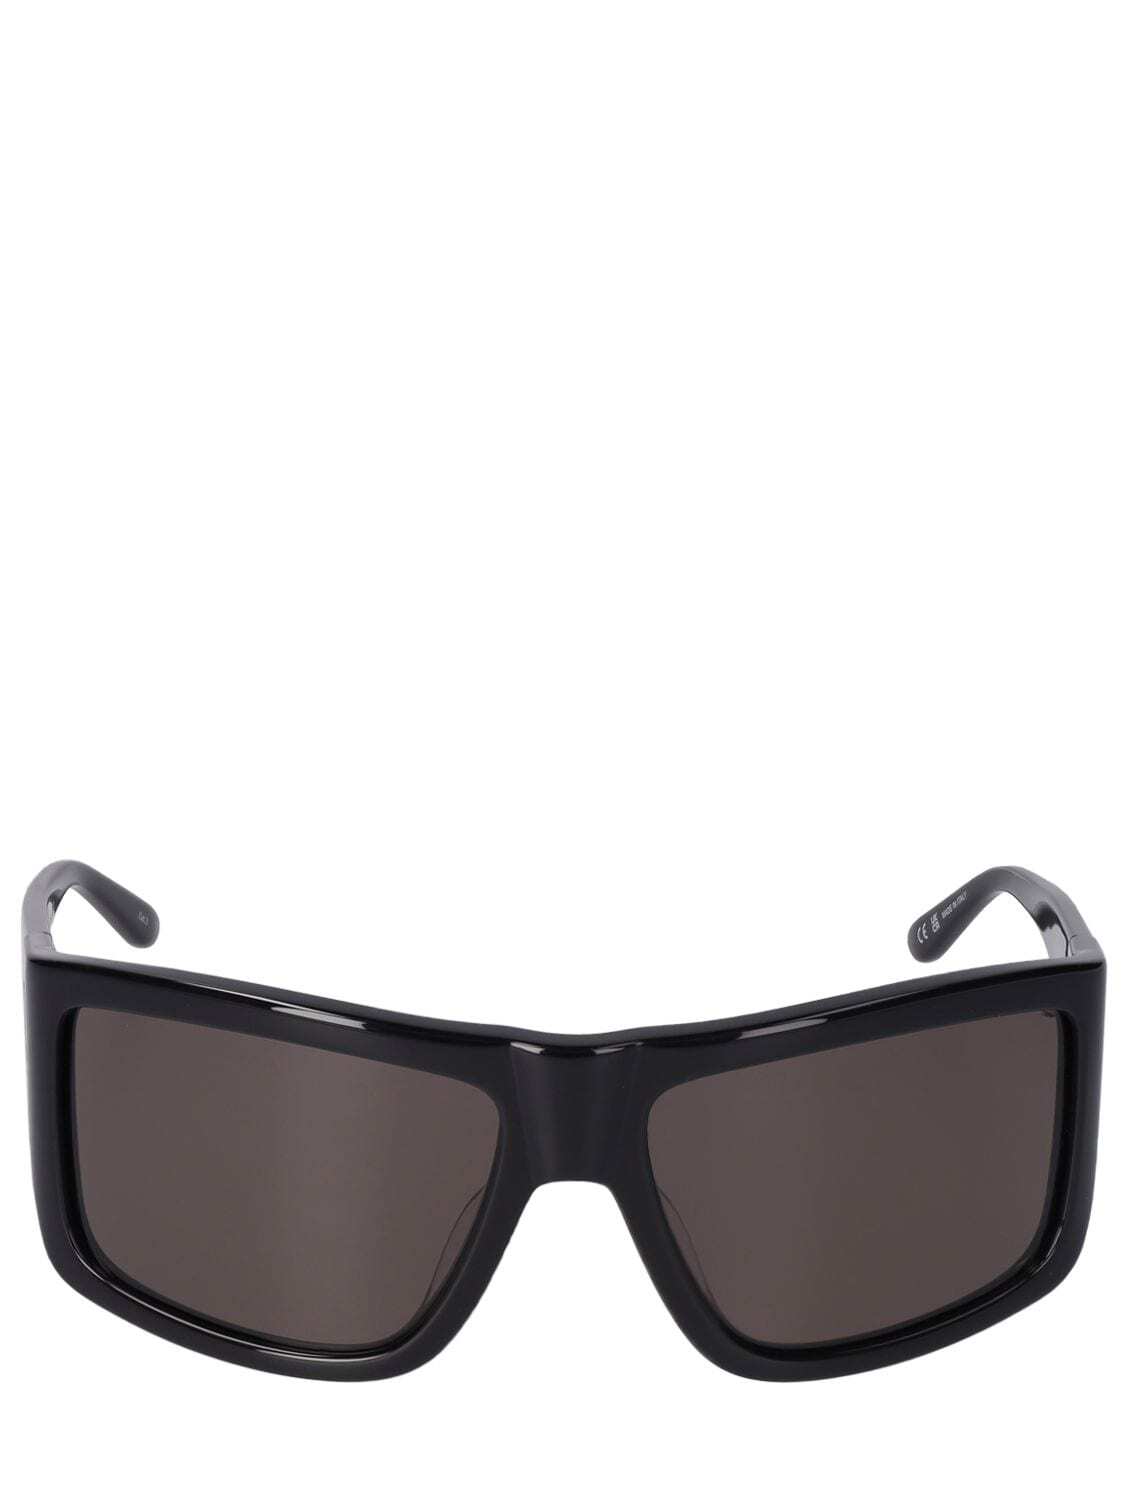 COURREGES Shock 2 Squared Acetate Sunglasses in black